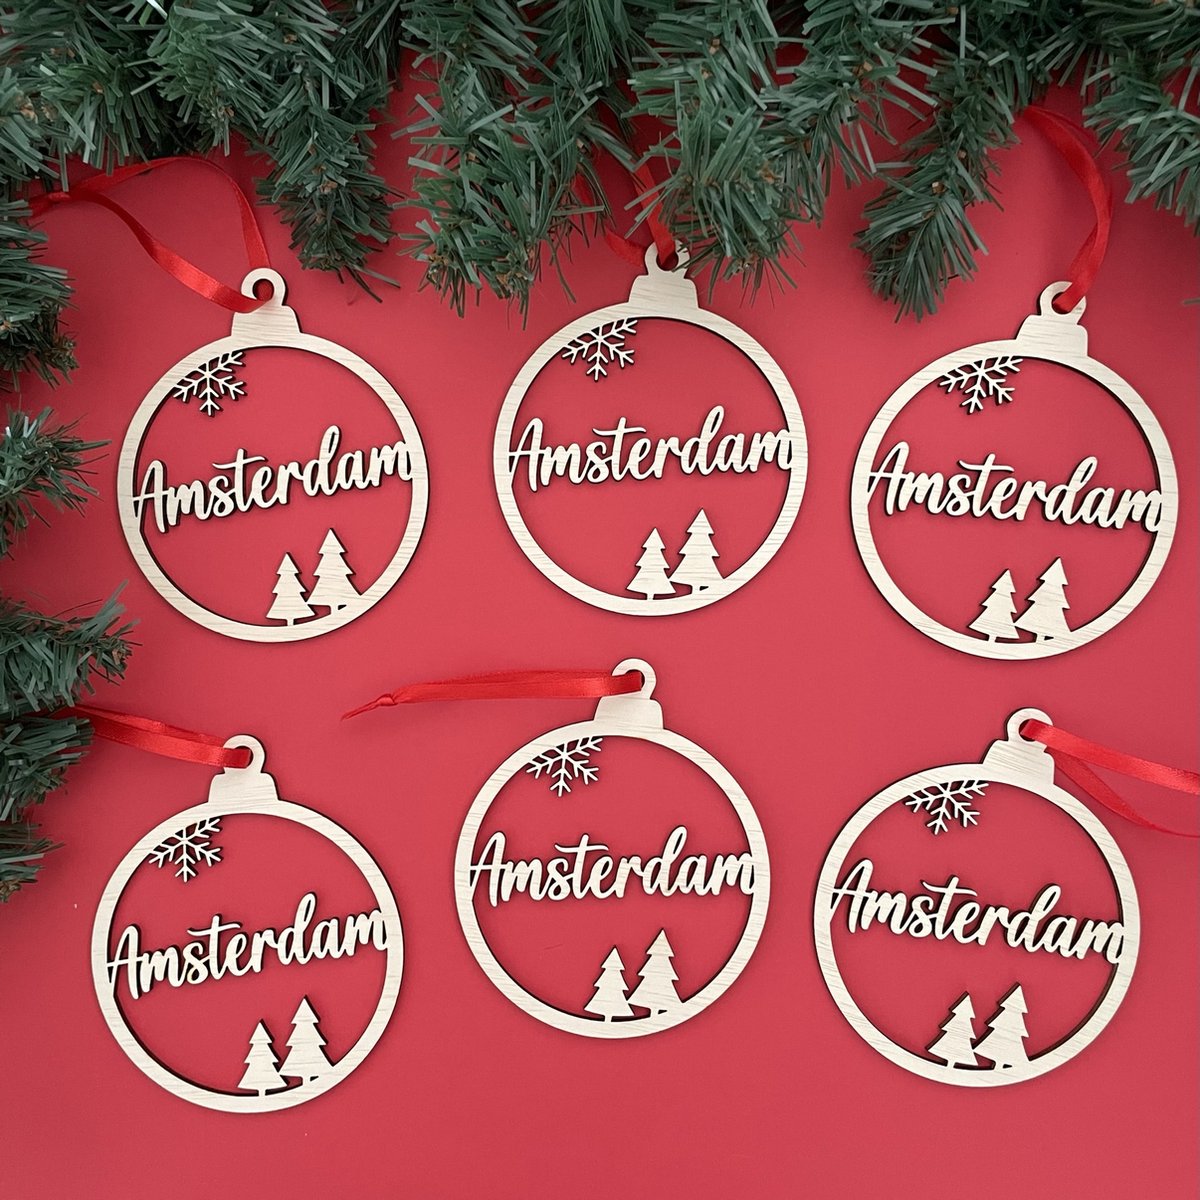 Houten Kersthangers Set Amsterdam 6 Stuks - Kerst - Kerstbal - Hout - Kerstboom - Houten Decoratie - Kerstmis - Kerstdecoratie - Kerst ornament – Versiering